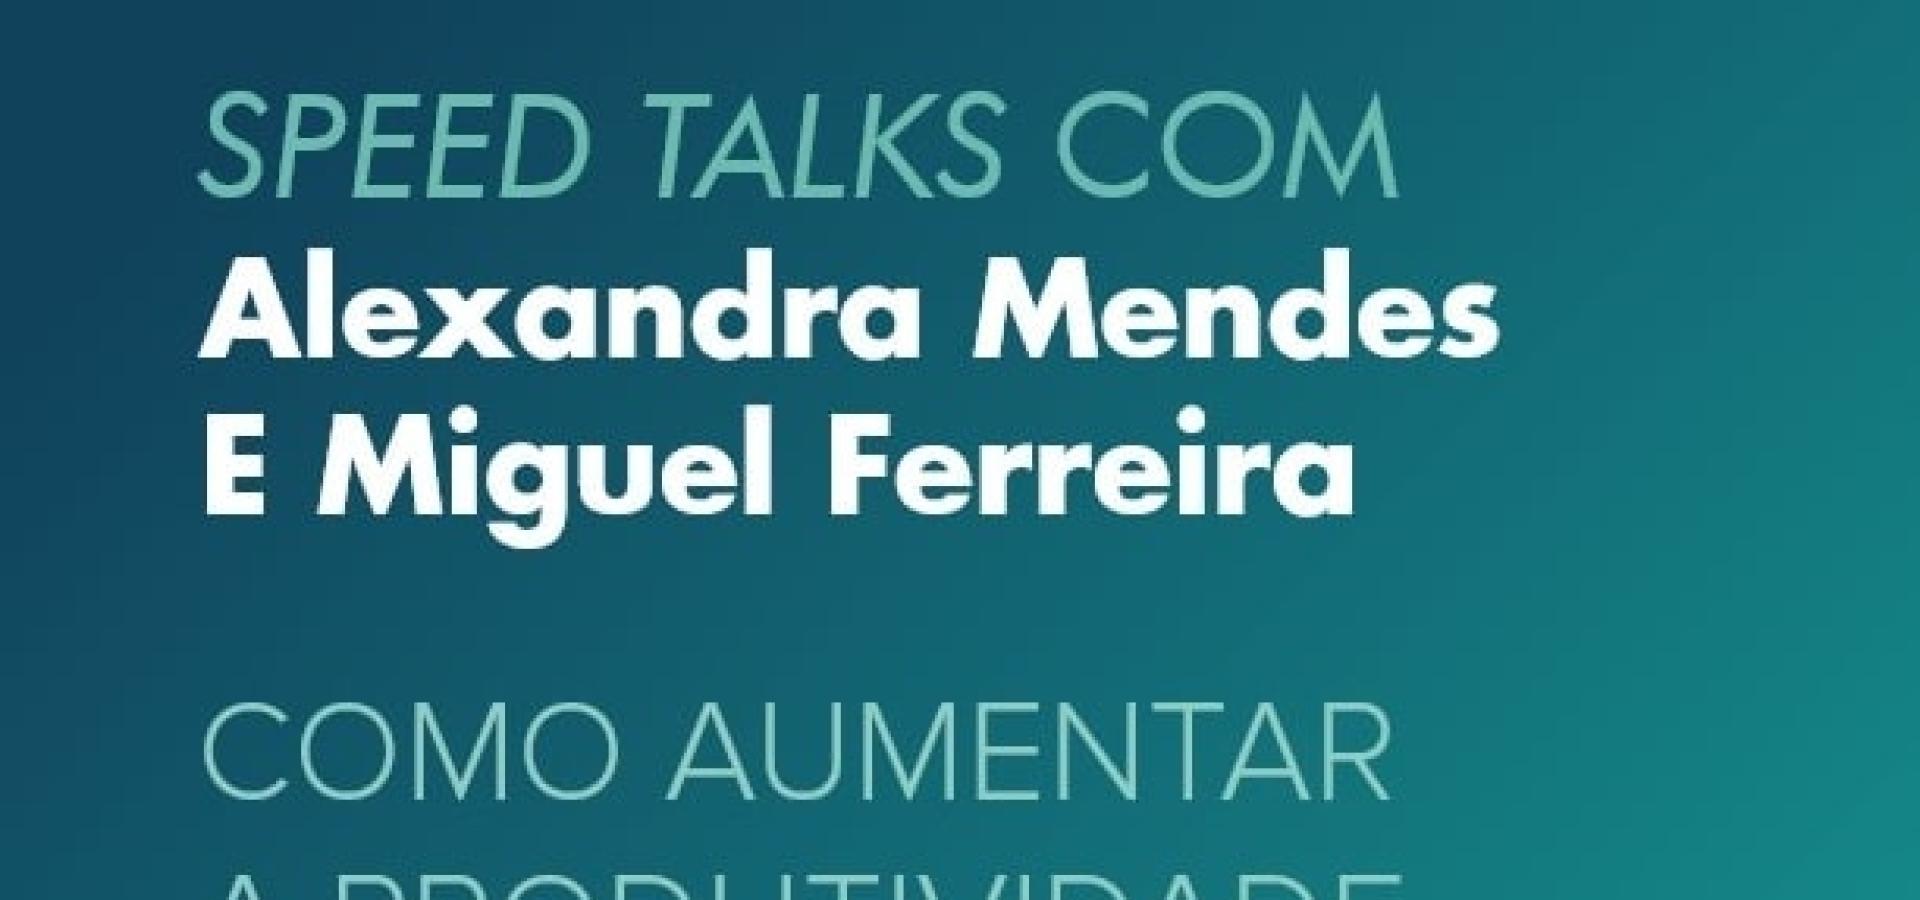 Speed Talks com Alexandra Mendes e Miguel Ferreira | Como aumentar a produtividade e eficácia pessoal